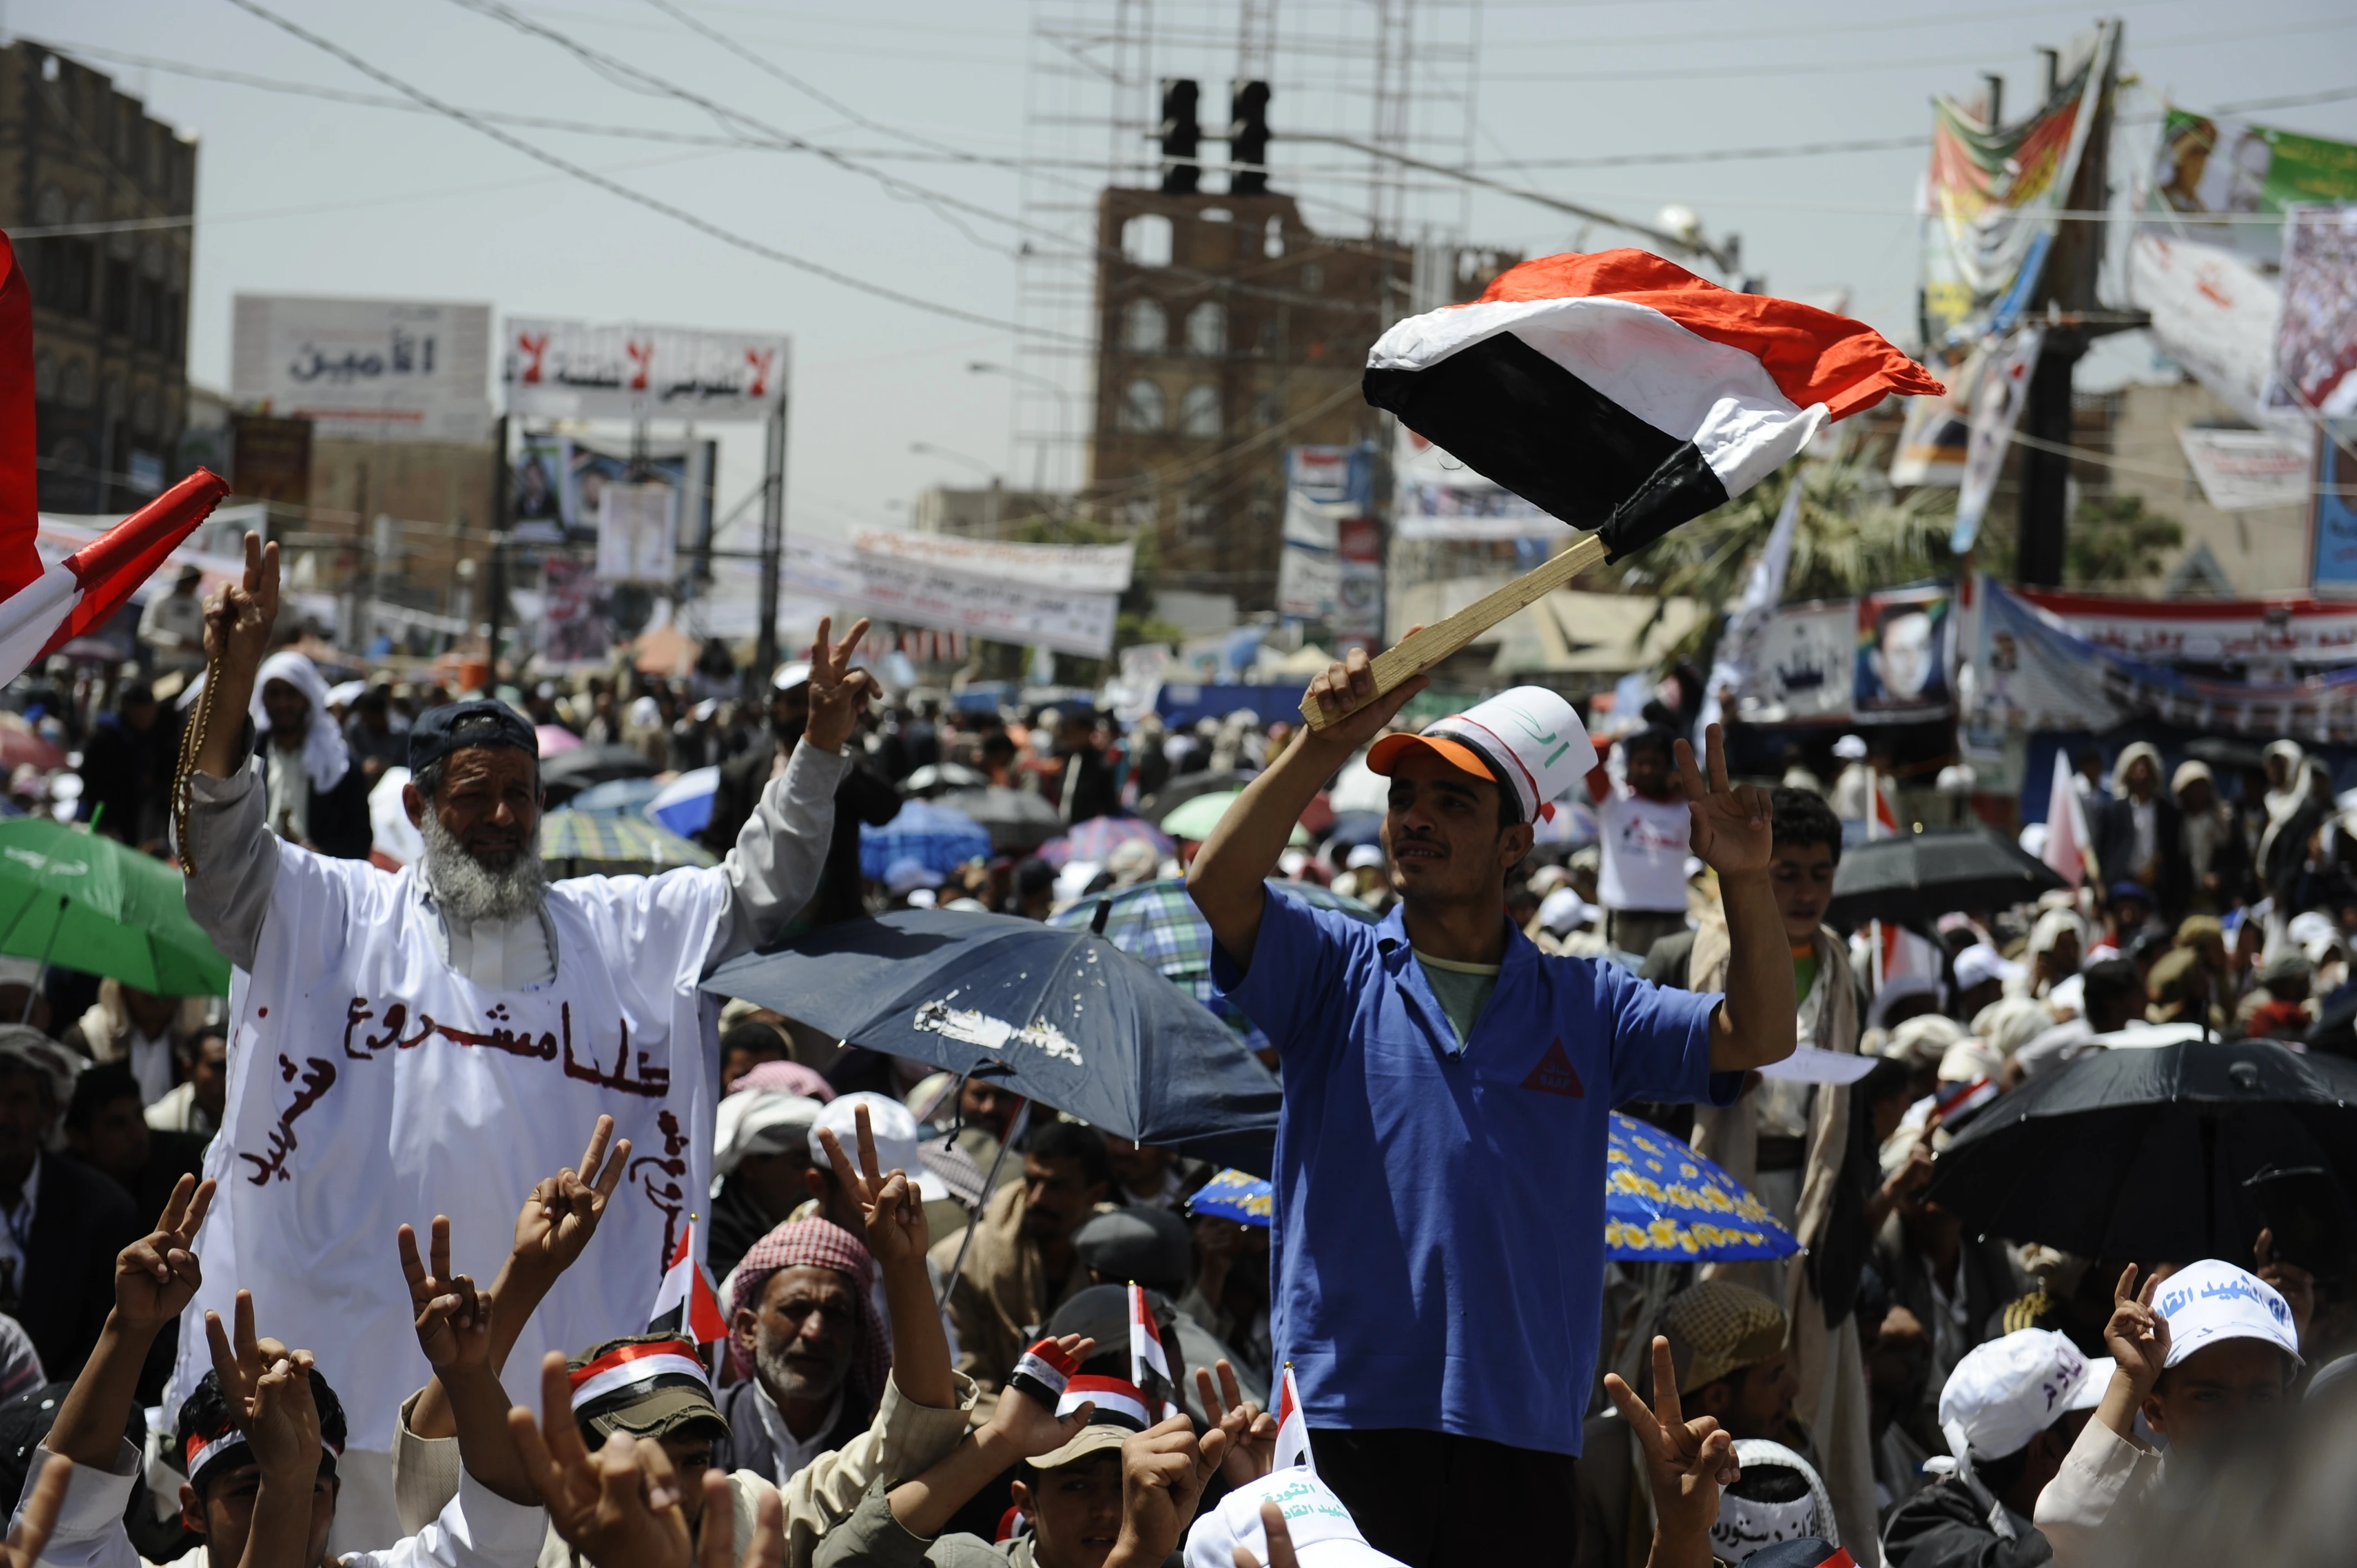 De Arabische lente leidde tot gewelddadige en niet-gewelddadige demonstraties en protesten tegen de corrupte overheid in Jemen. Volle straten in Sanaa, de hoofdstad van Jemen